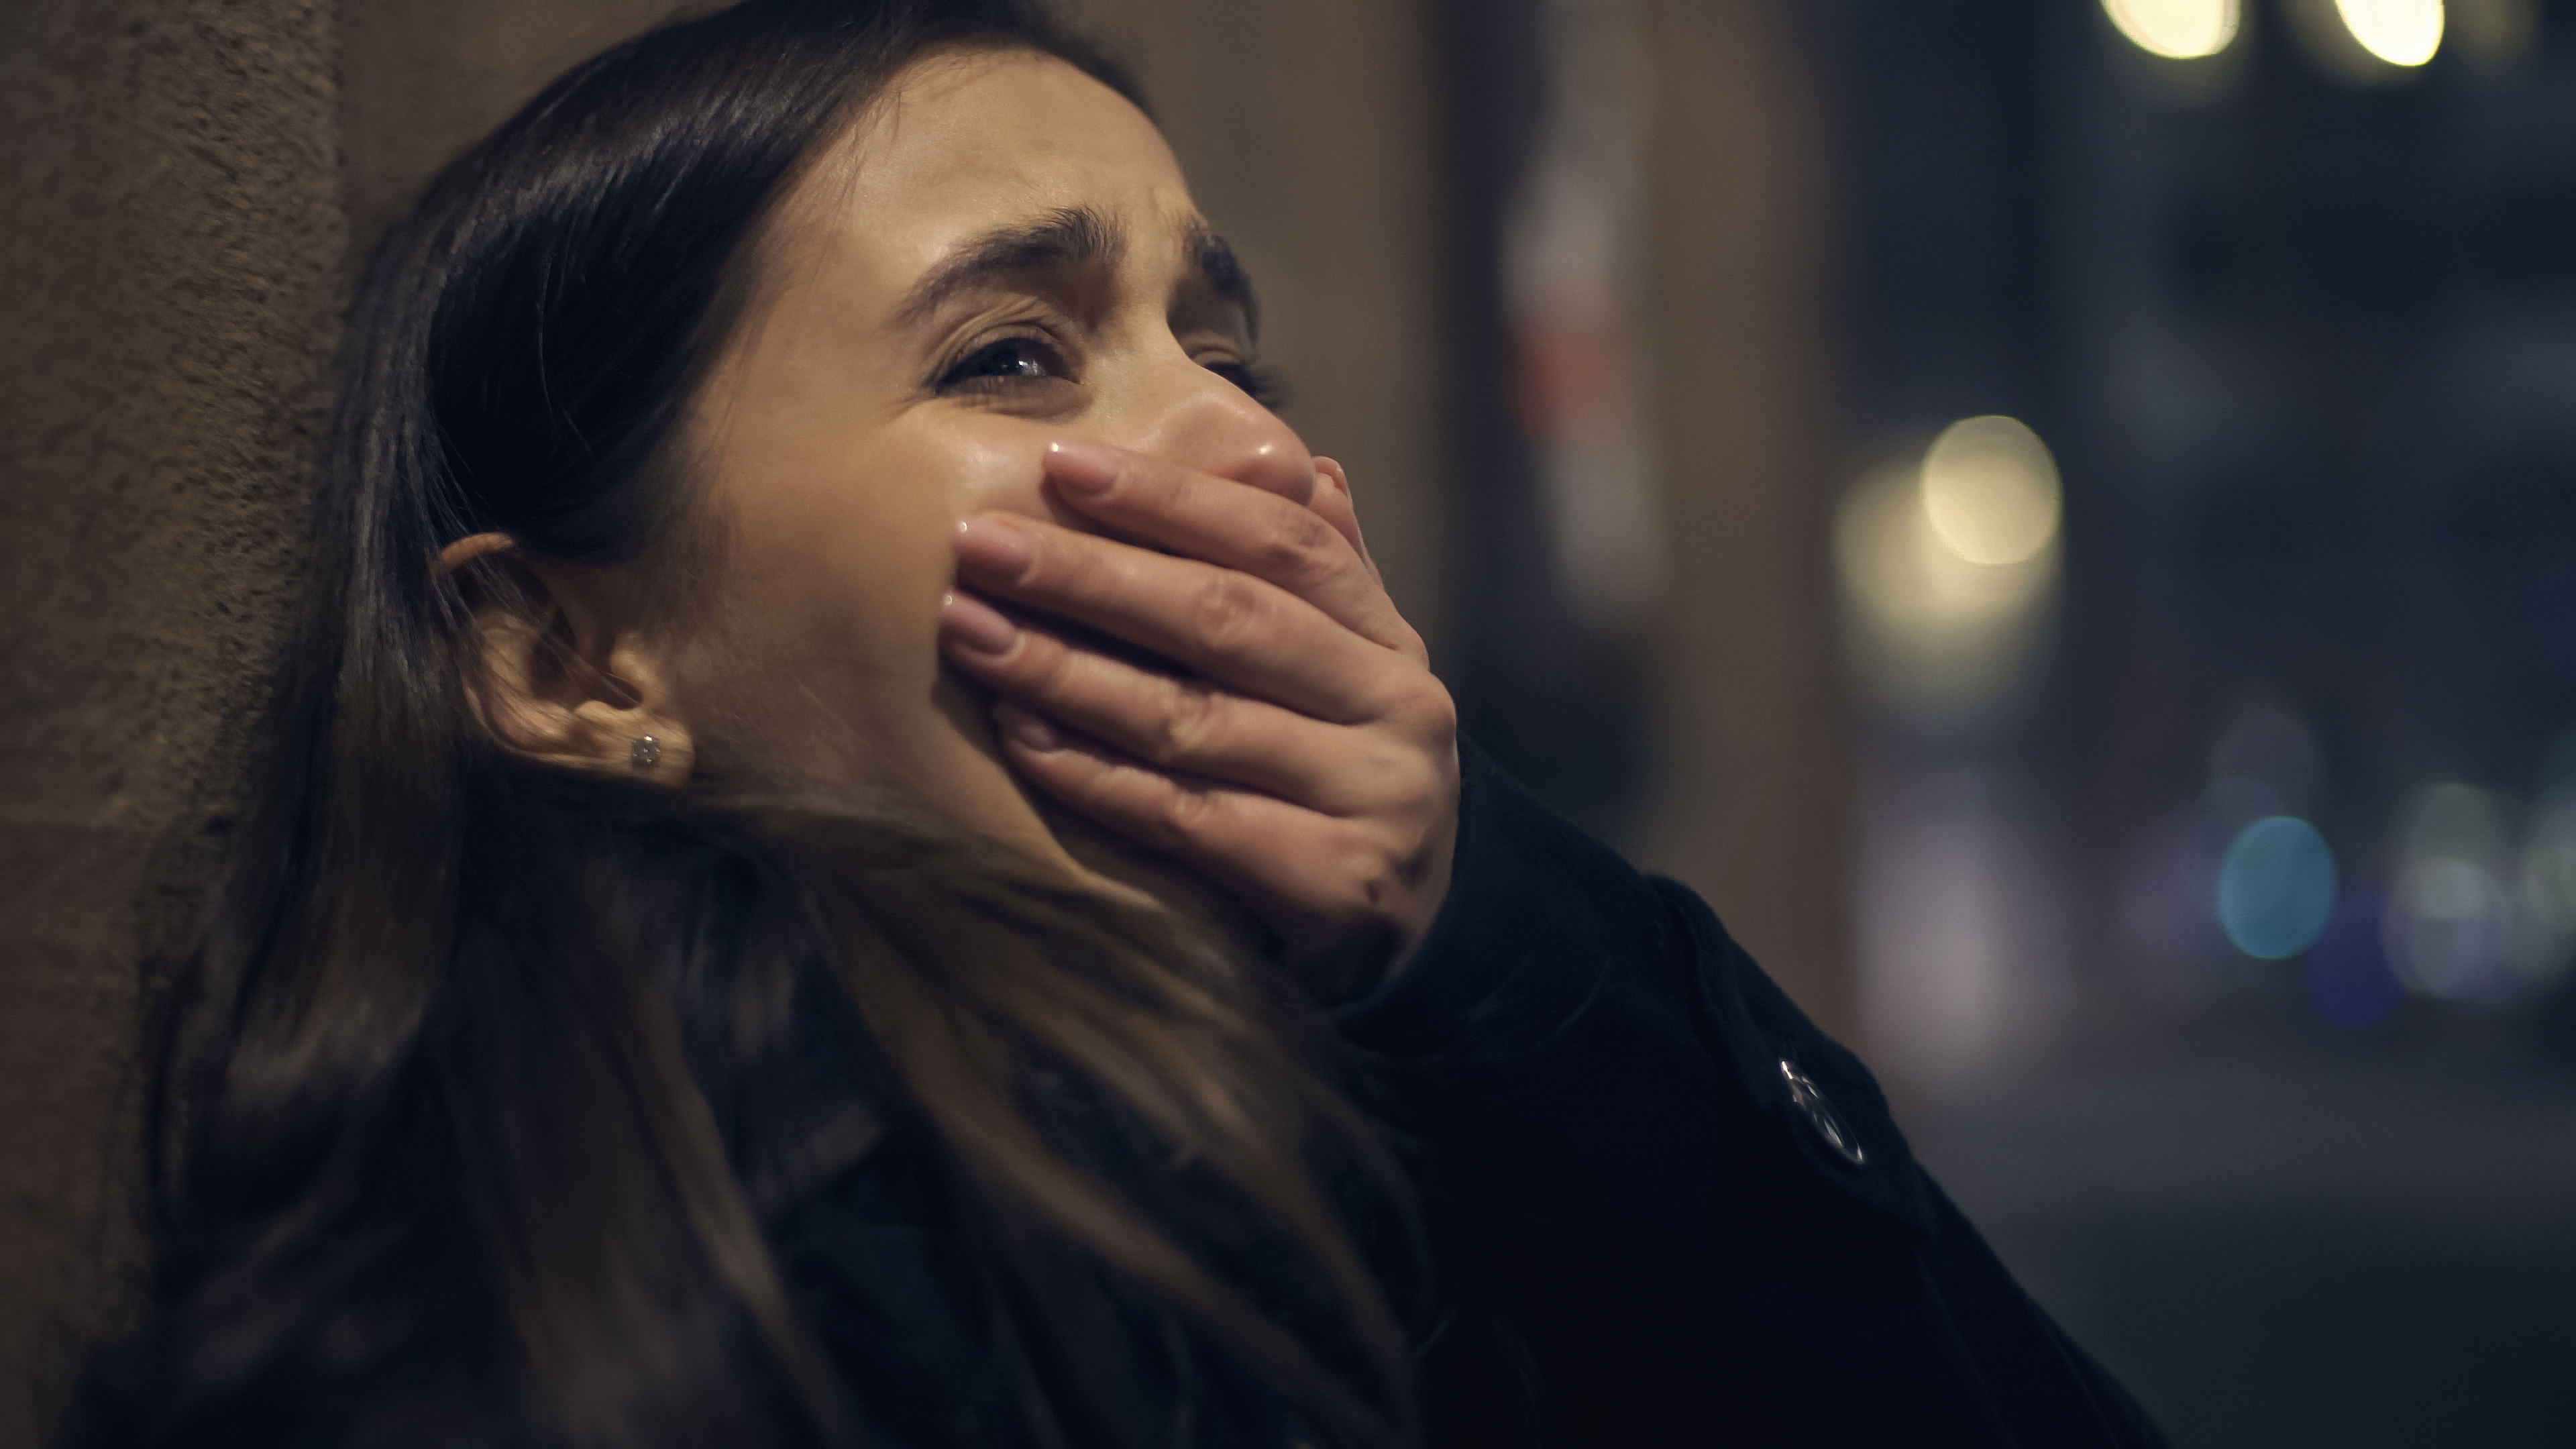 Eine verängstigte, weinende Frau, die sich die Hand vor den Mund hält | Quelle: Shutterstock